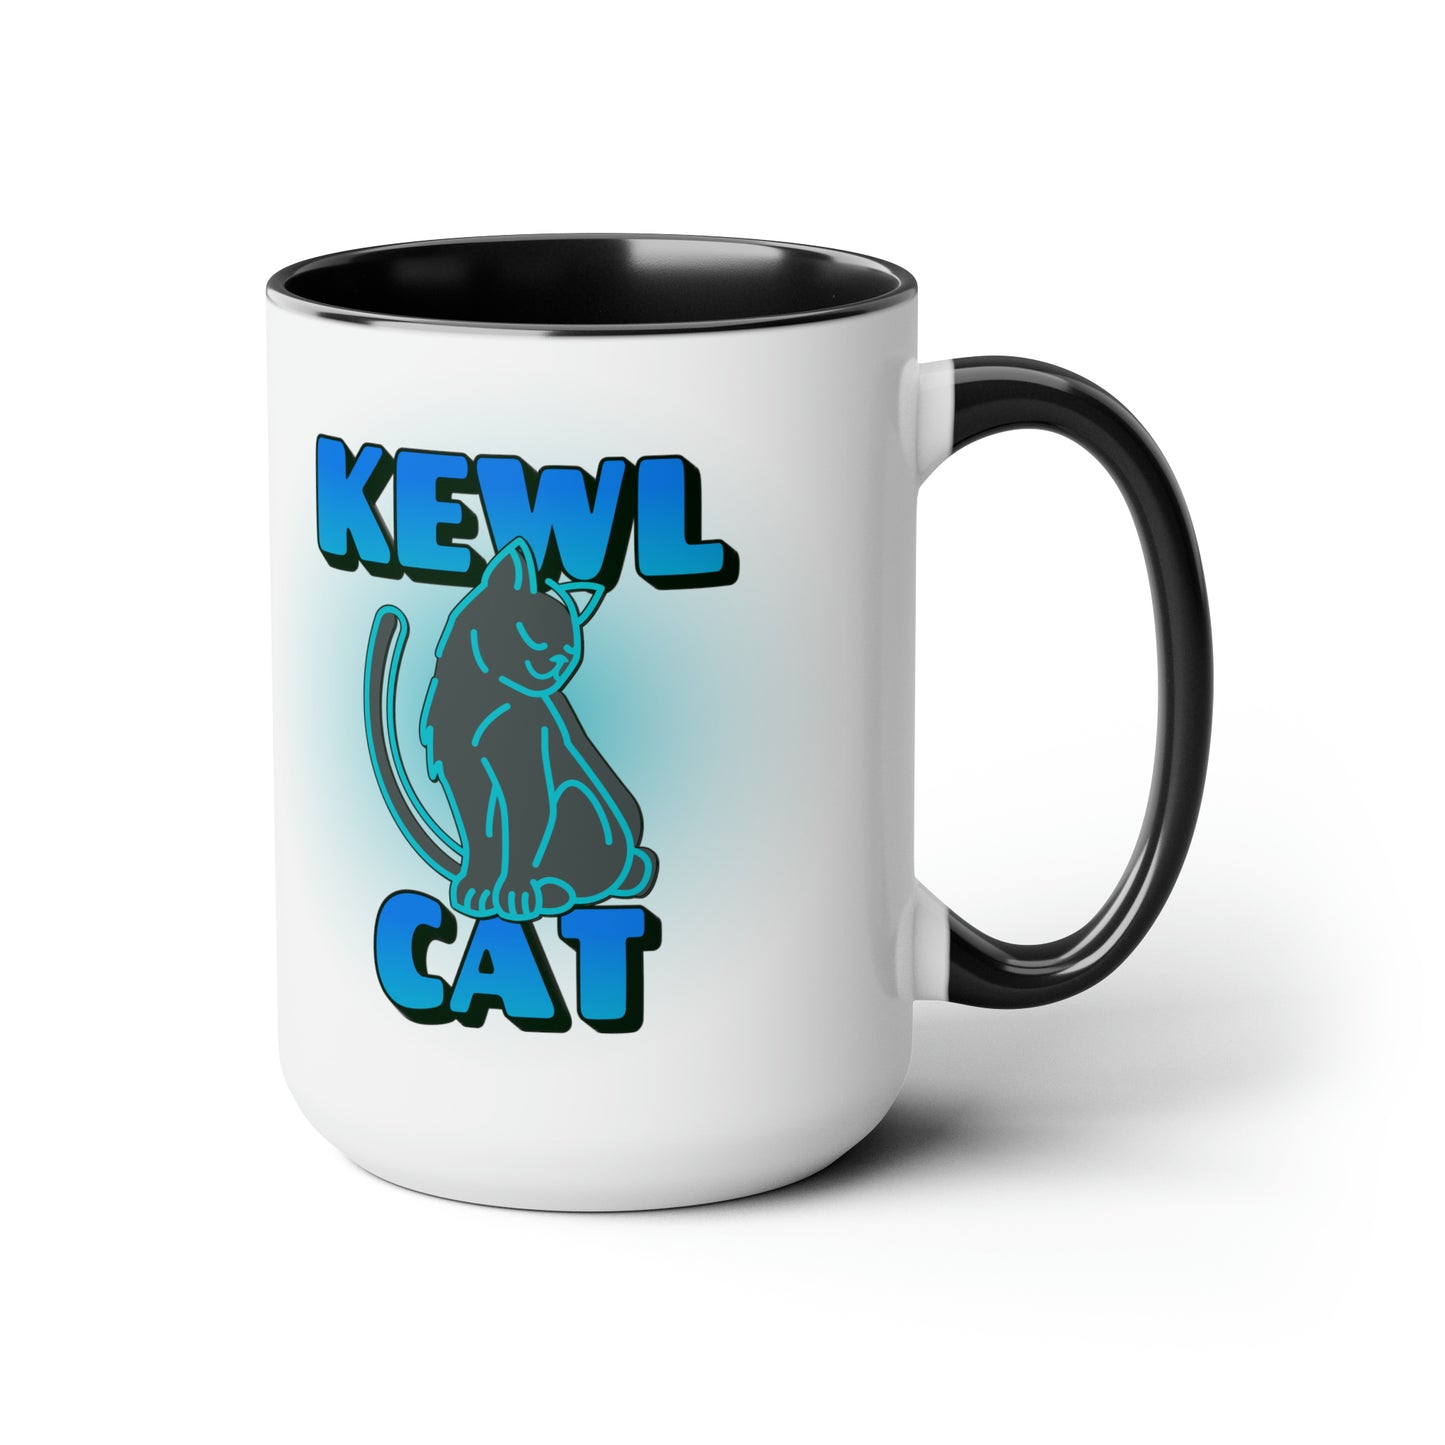 KEWL CAT Mug, 15oz